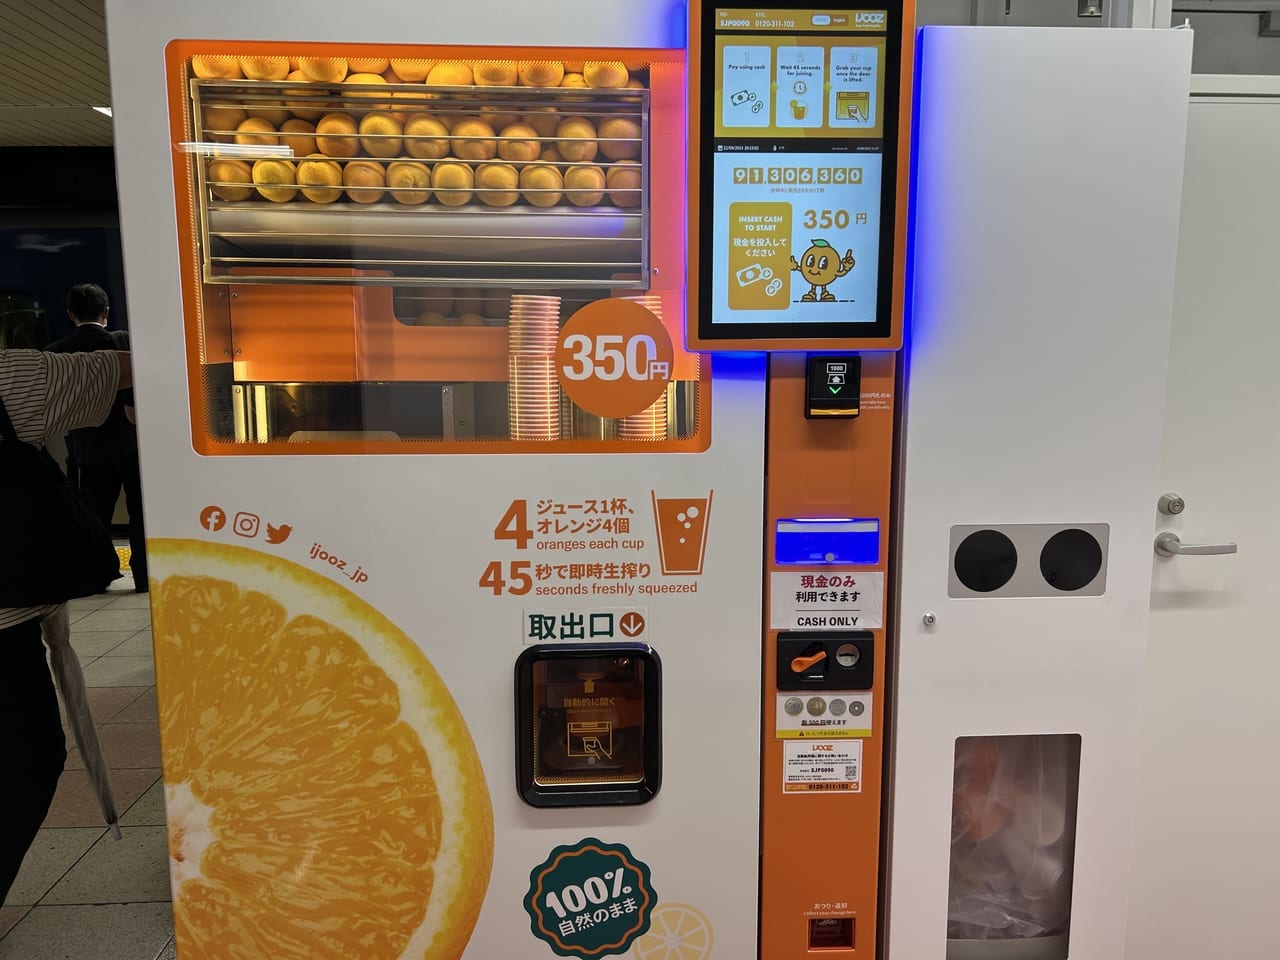 大和駅生搾りオレンジジュース自販機IJOOZ